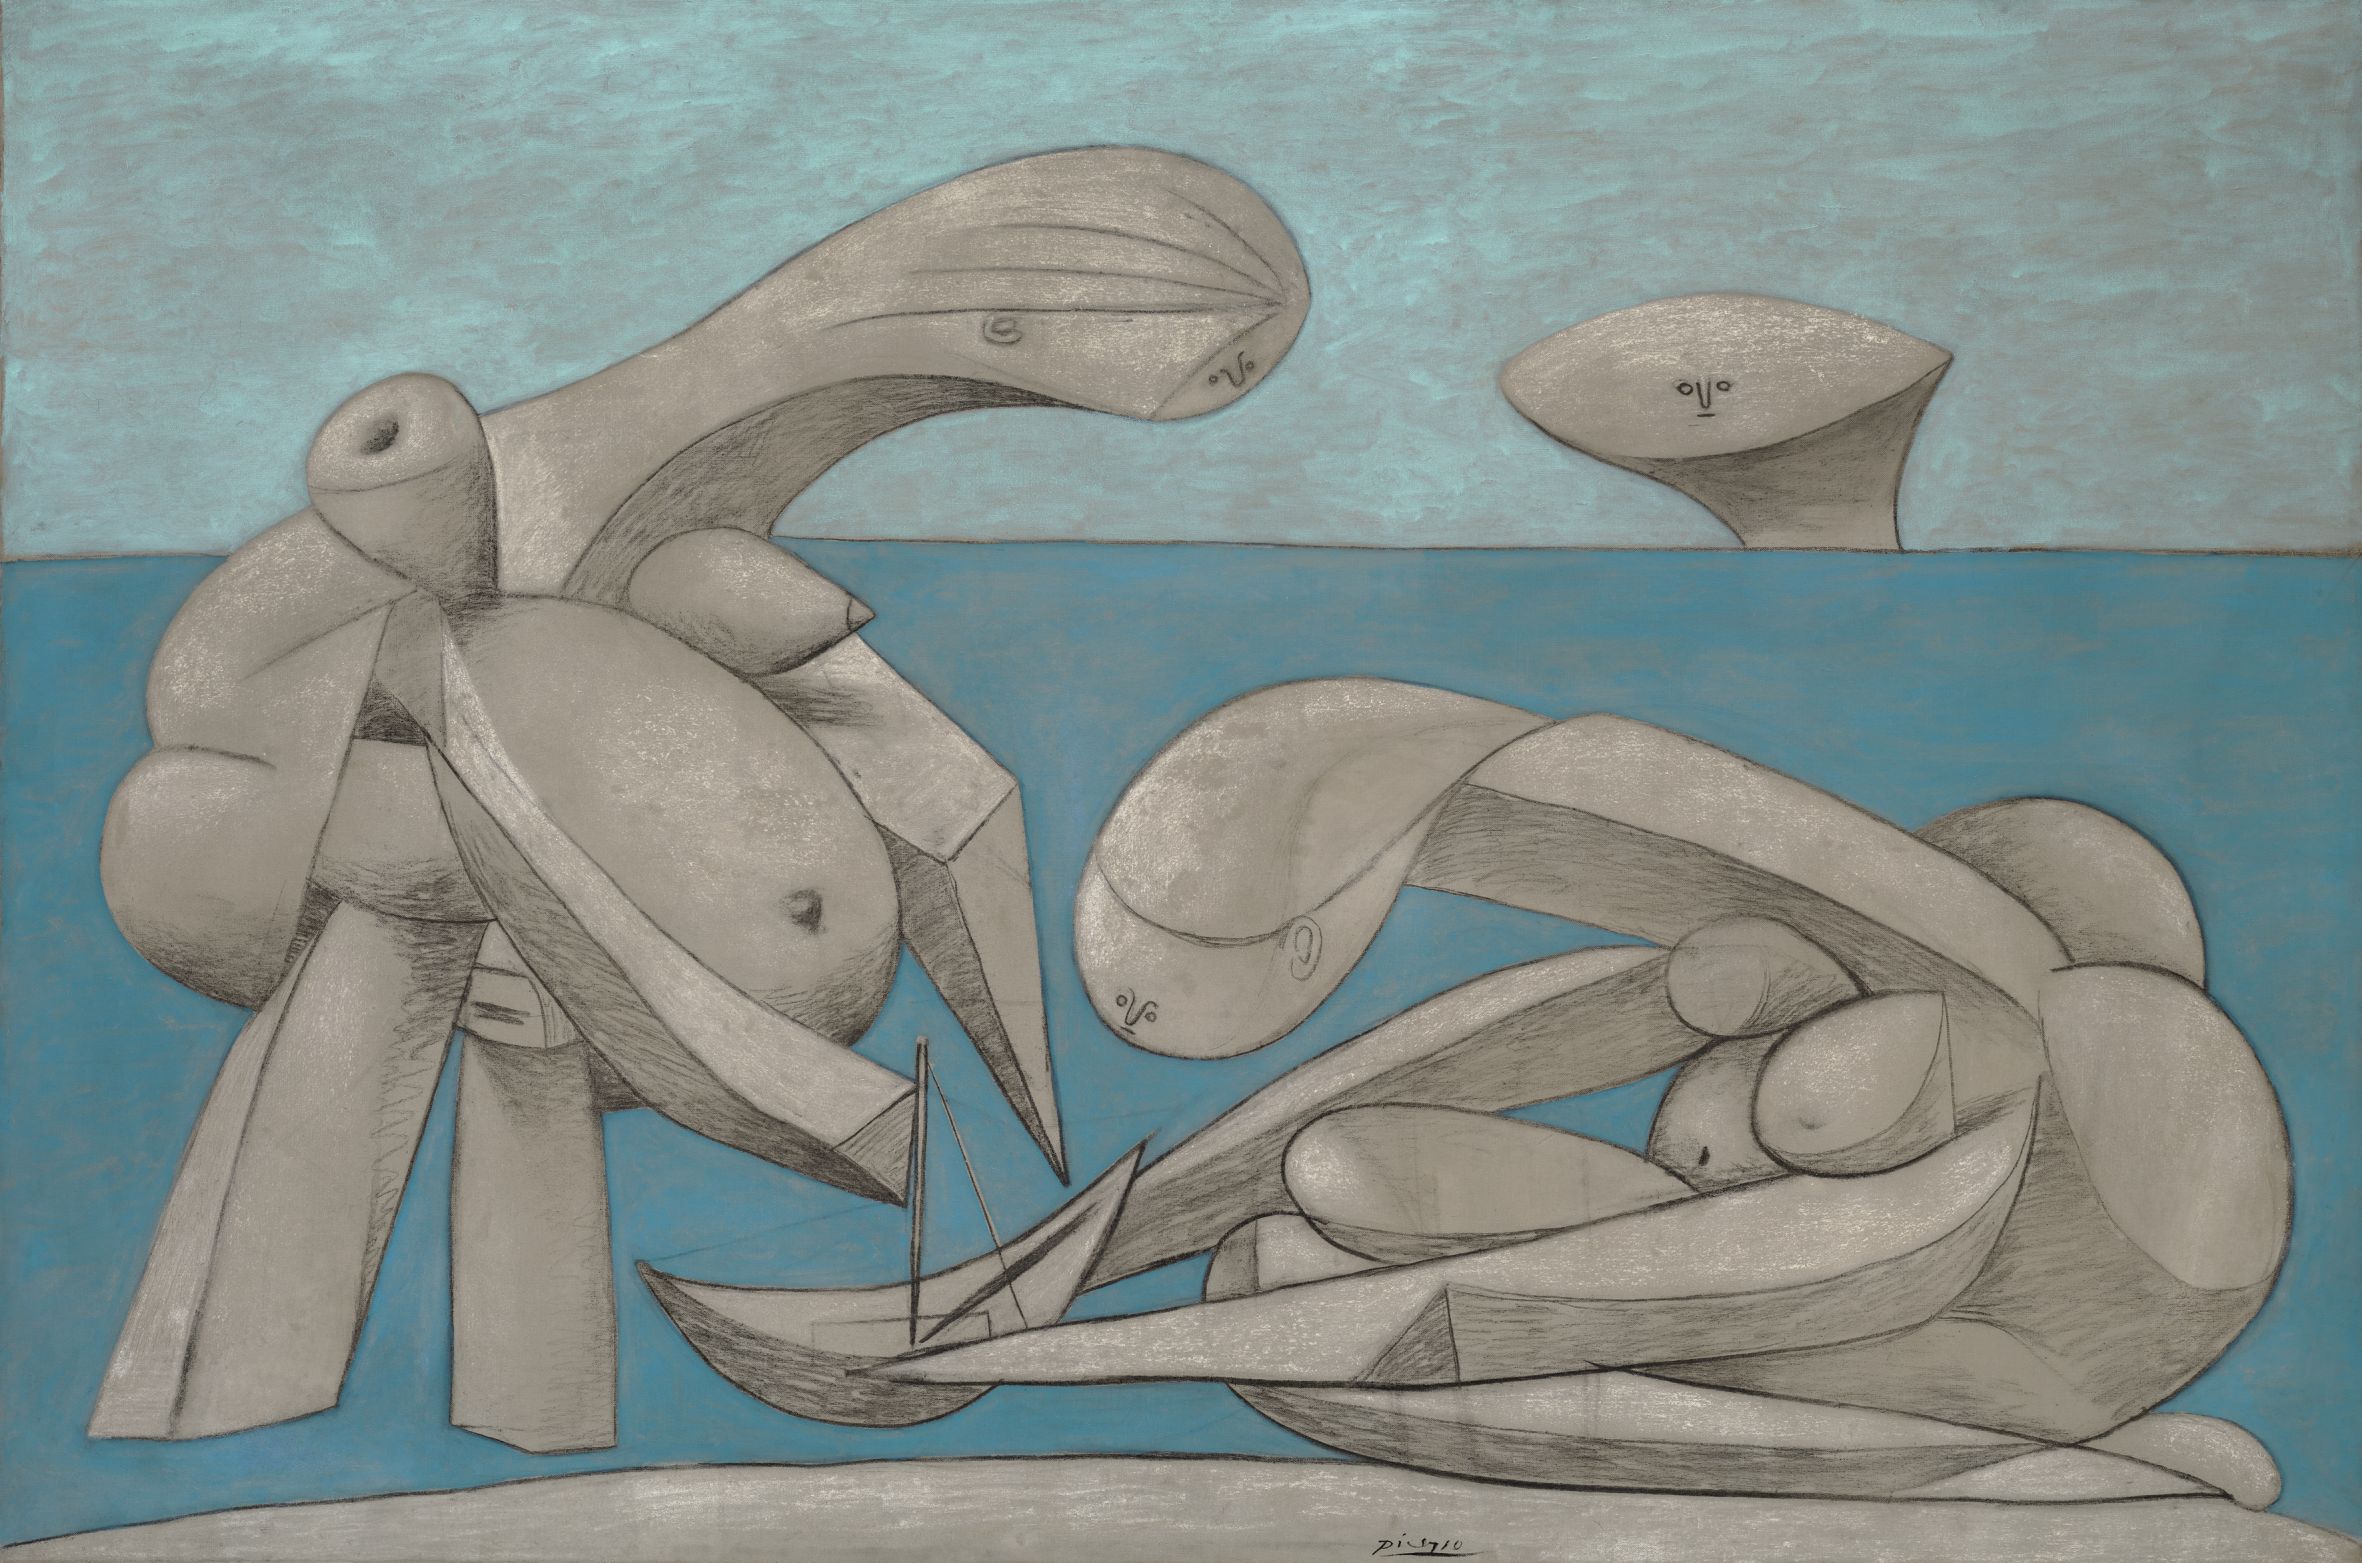 Pablo Picasso, Sulla spiaggia (La Baignade), 12 febbraio 1937, olio, conté e gesso su tela, 129,1 x 194 cm Peggy Guggenheim Collection, Venezia © Succession Picasso, by SIAE 2017